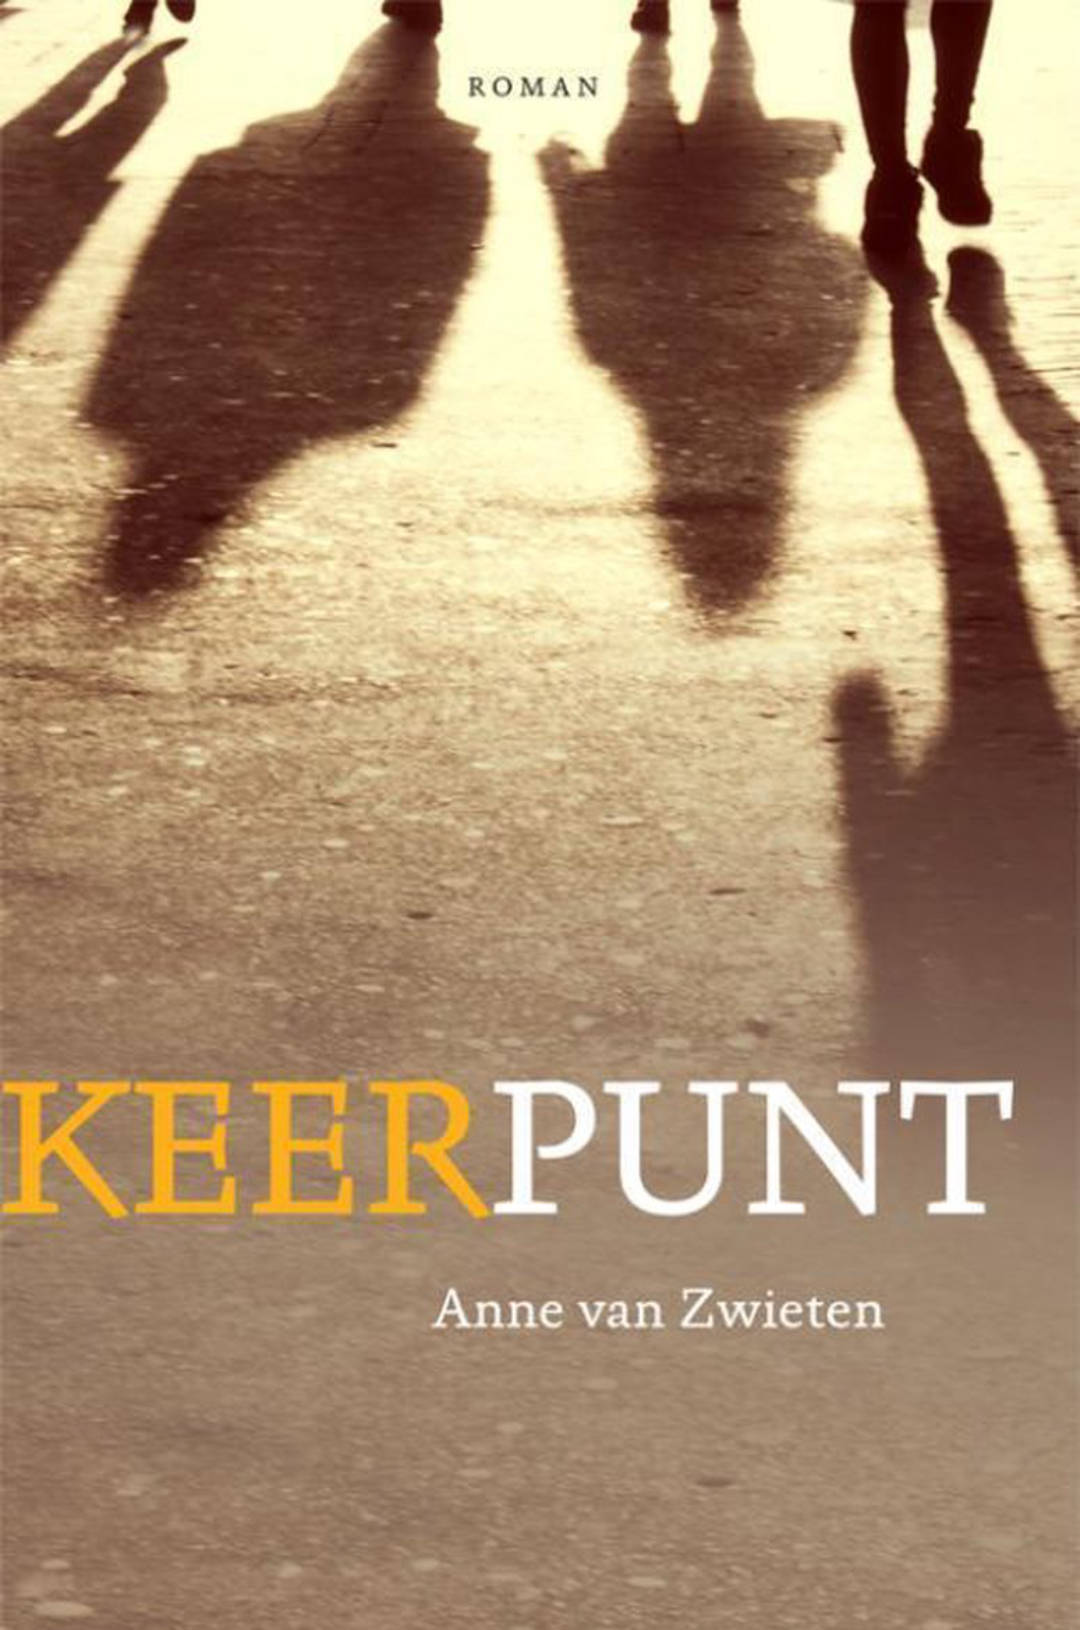 Keerpunt is de debutroman van Anne van Zwieten